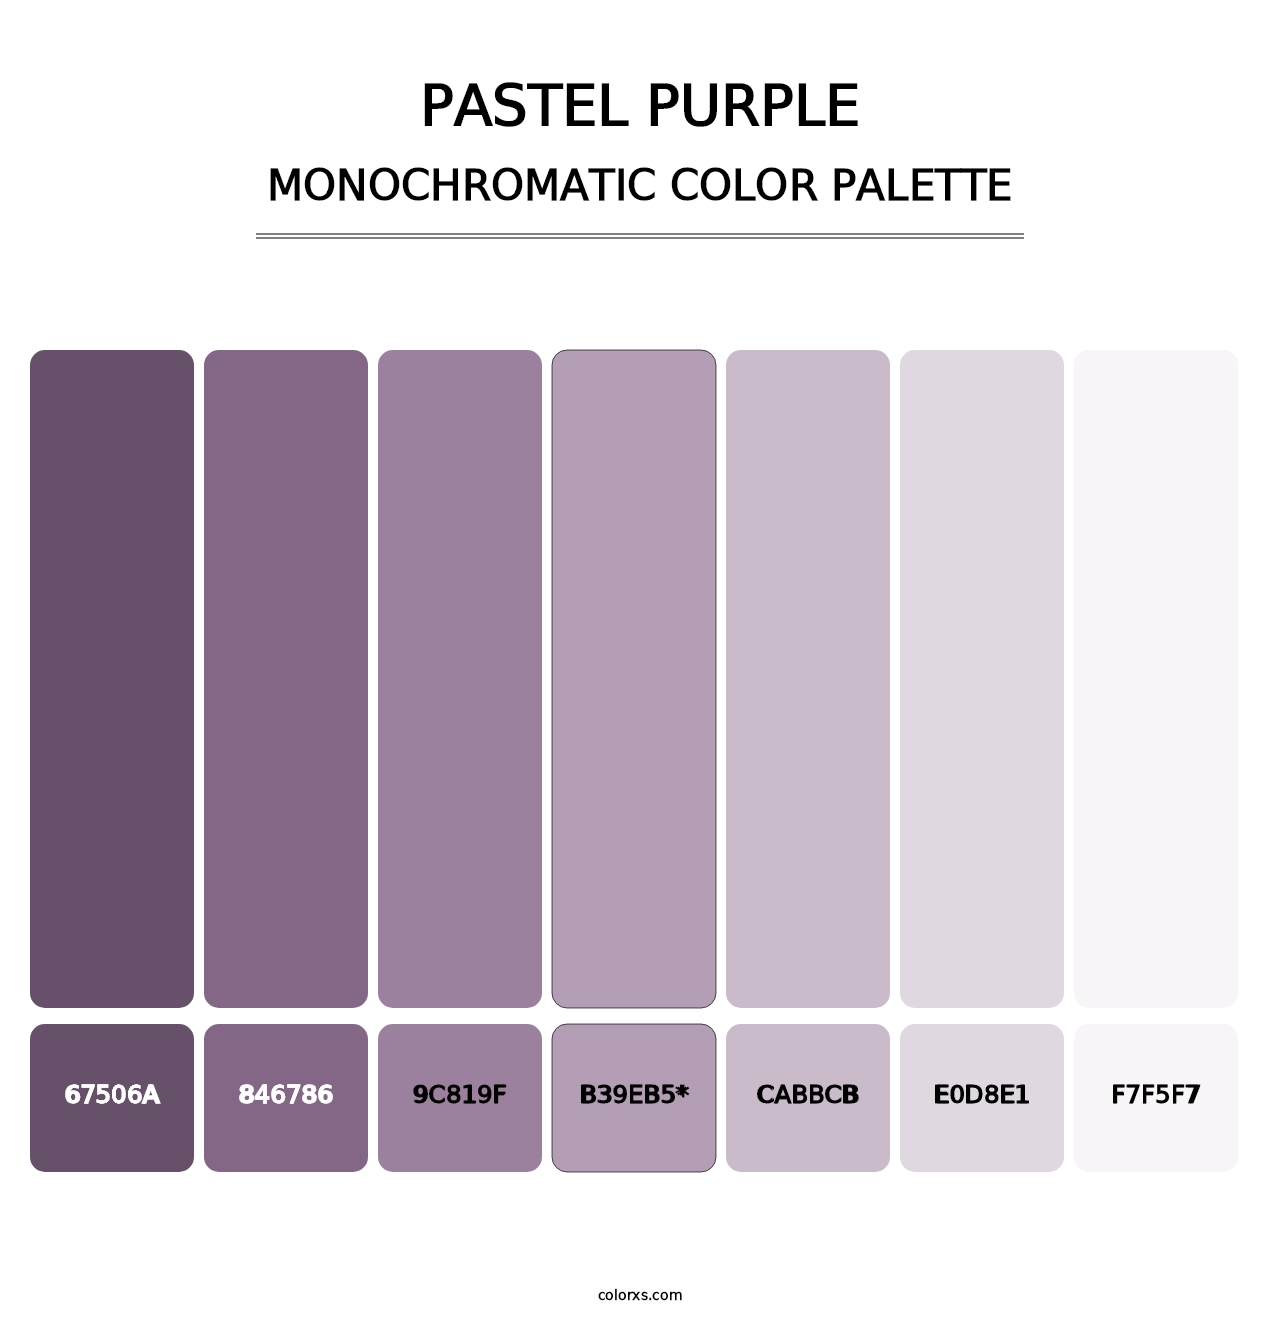 Pastel Purple - Monochromatic Color Palette